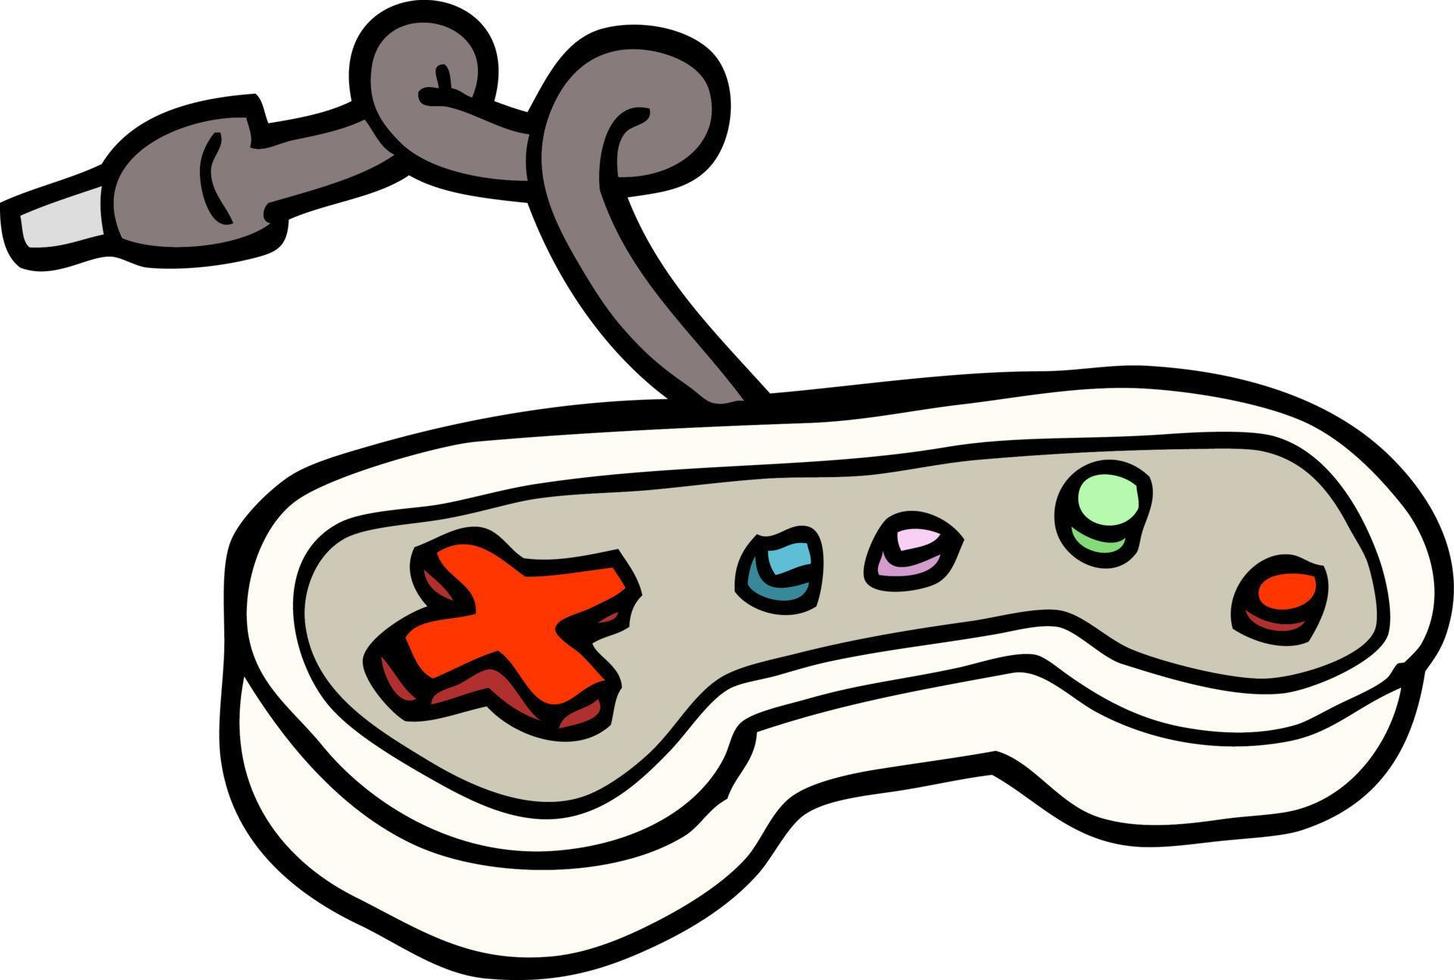 controlador de juegos de dibujos animados estilo doodle dibujado a mano vector